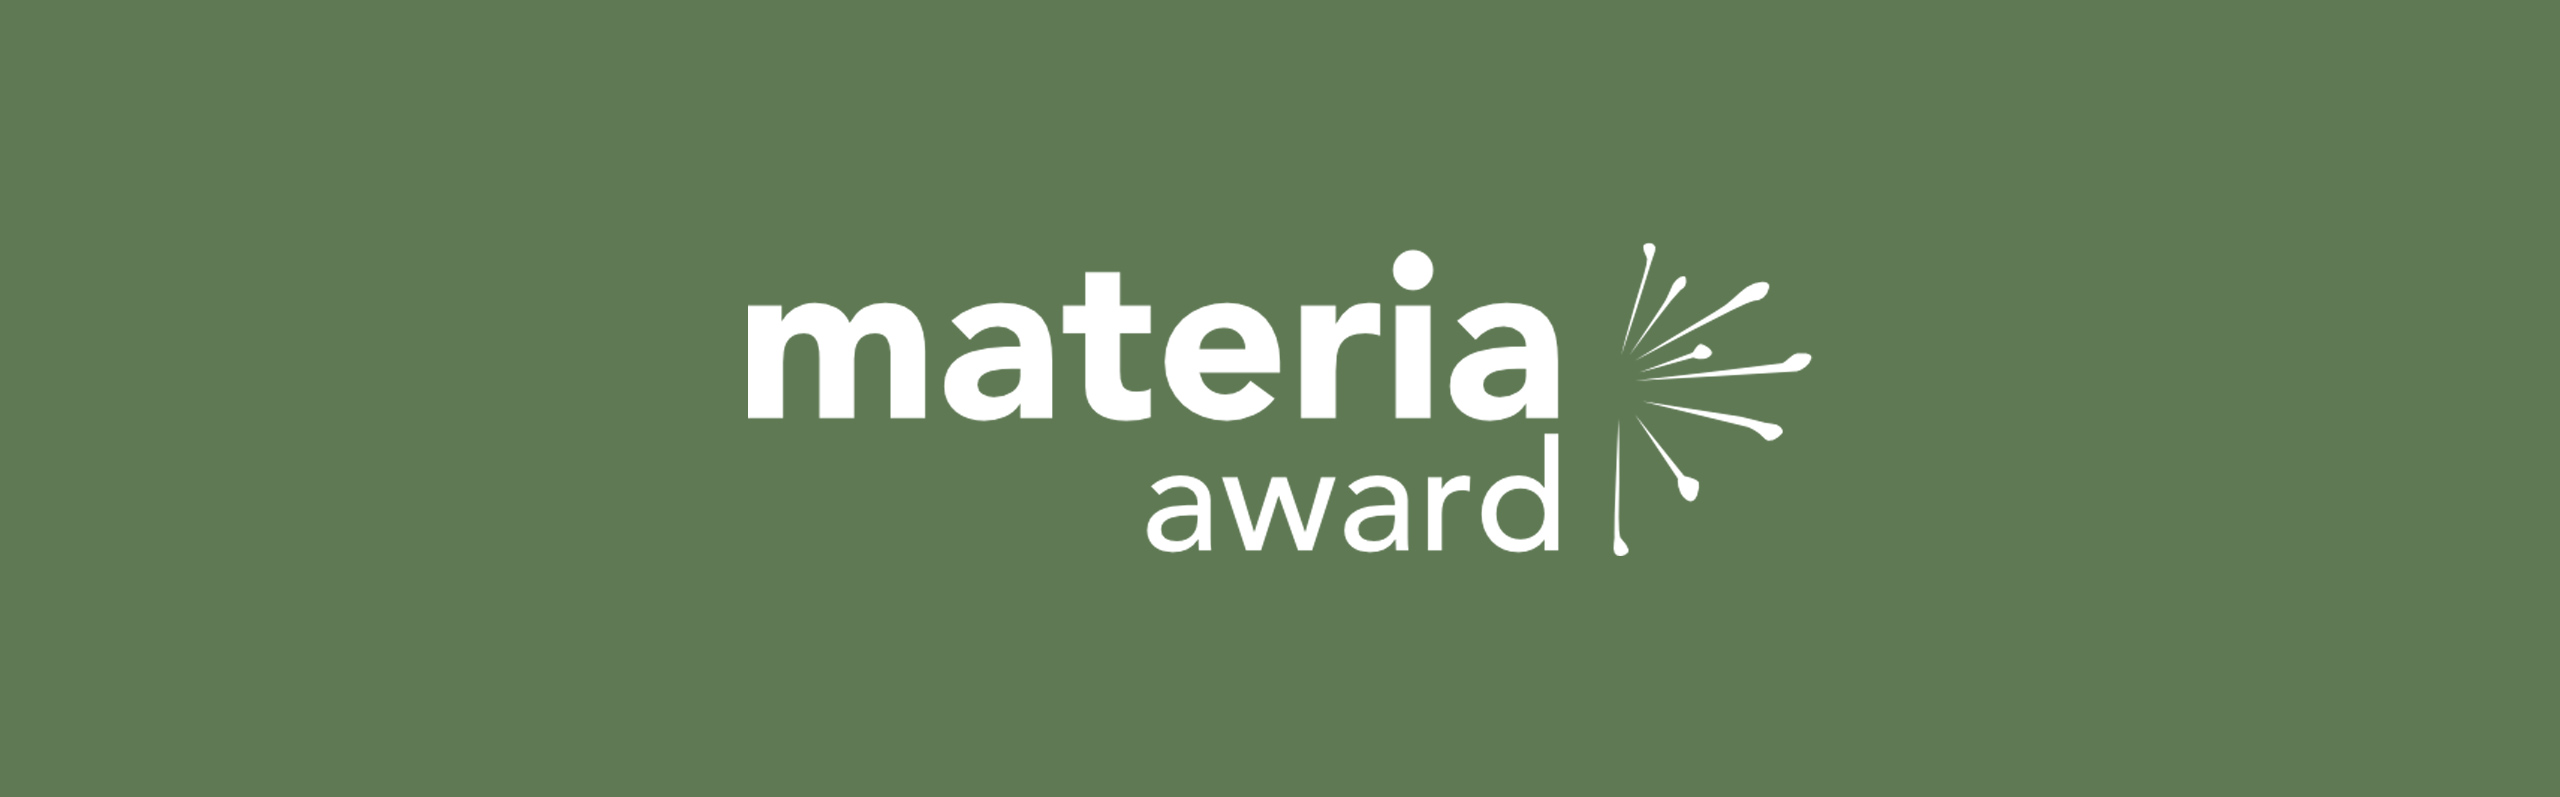 Materia award, prix mondial des architectures contemporaines en matériaux biosourcés et géosourcés